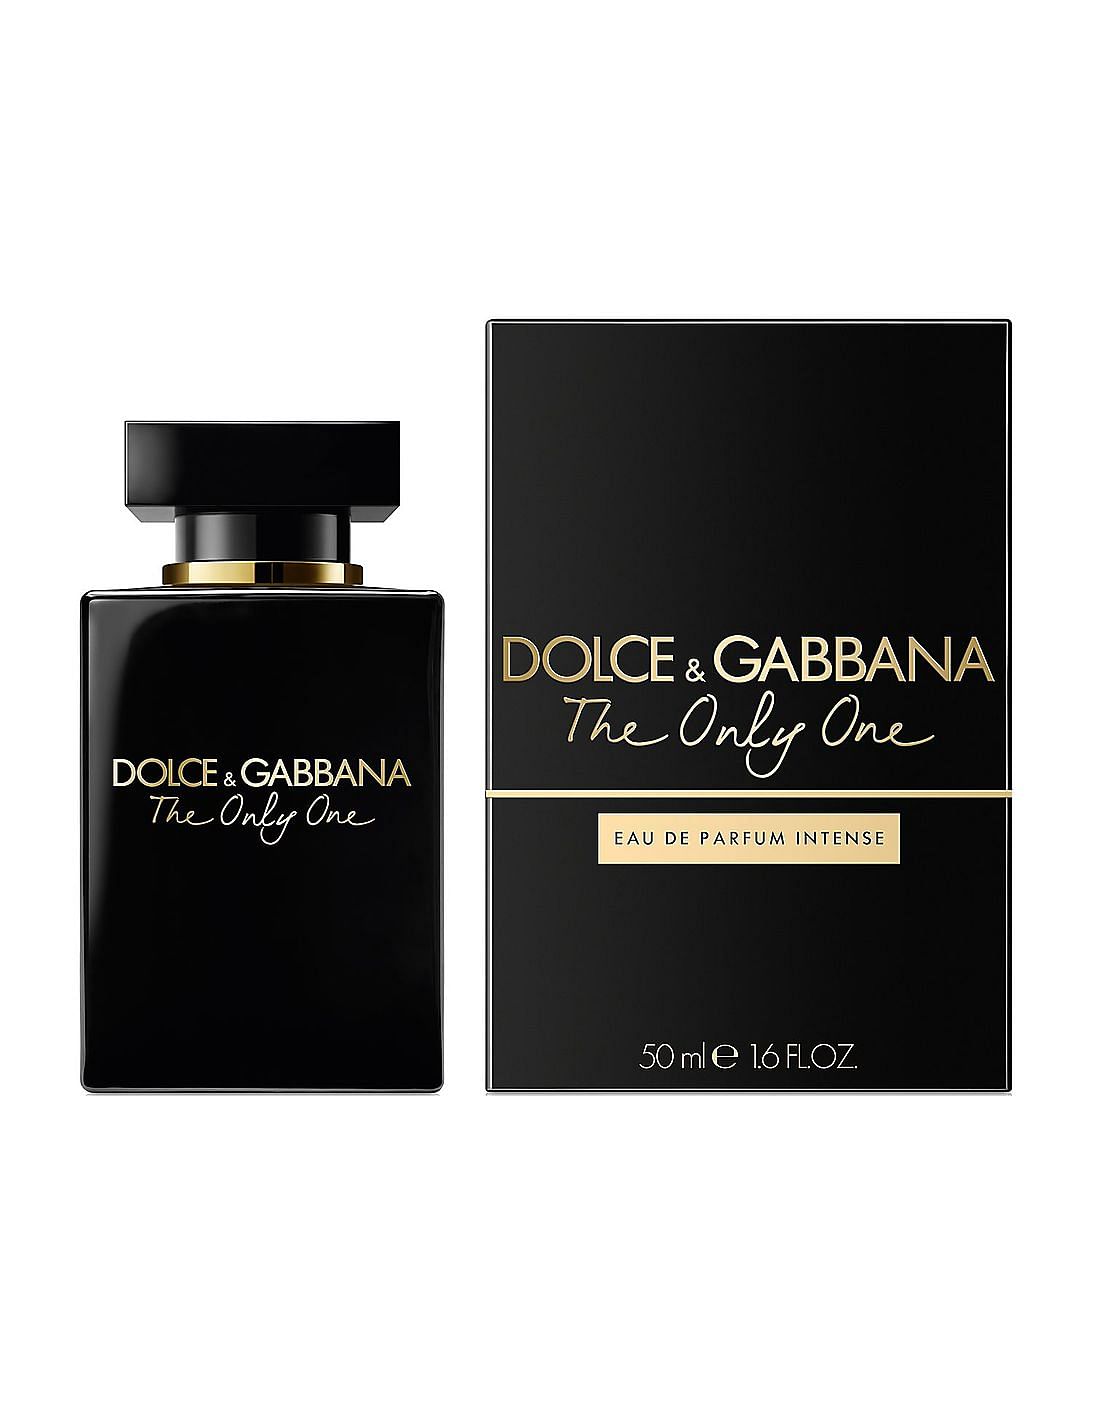 Дольче габбана черные духи. Dolce & Gabbana the only one, EDP., 100 ml. Дольче Габбана Онли уан 50 мл. Дольче Габбана духи 100 мл. Духи Дольче Габбана the only one.